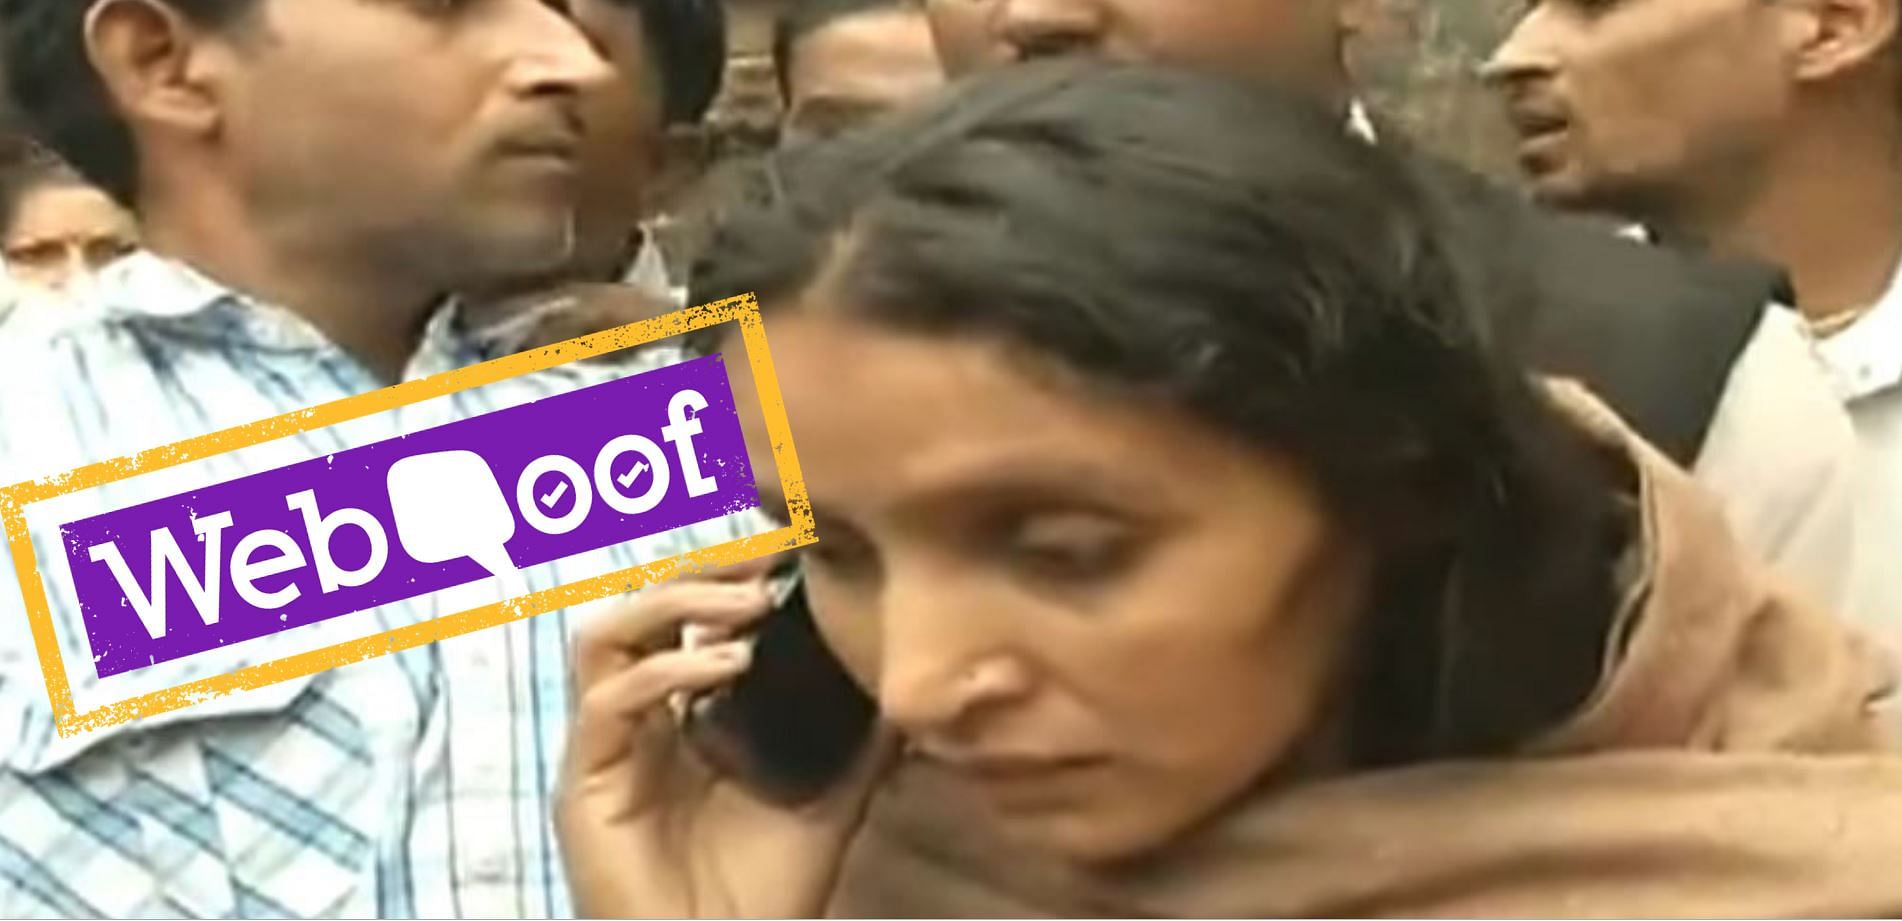 मोदी का पुलवामा हमले के शहीद जवान की पत्नी से फोन पर बात करने का दावा गलत